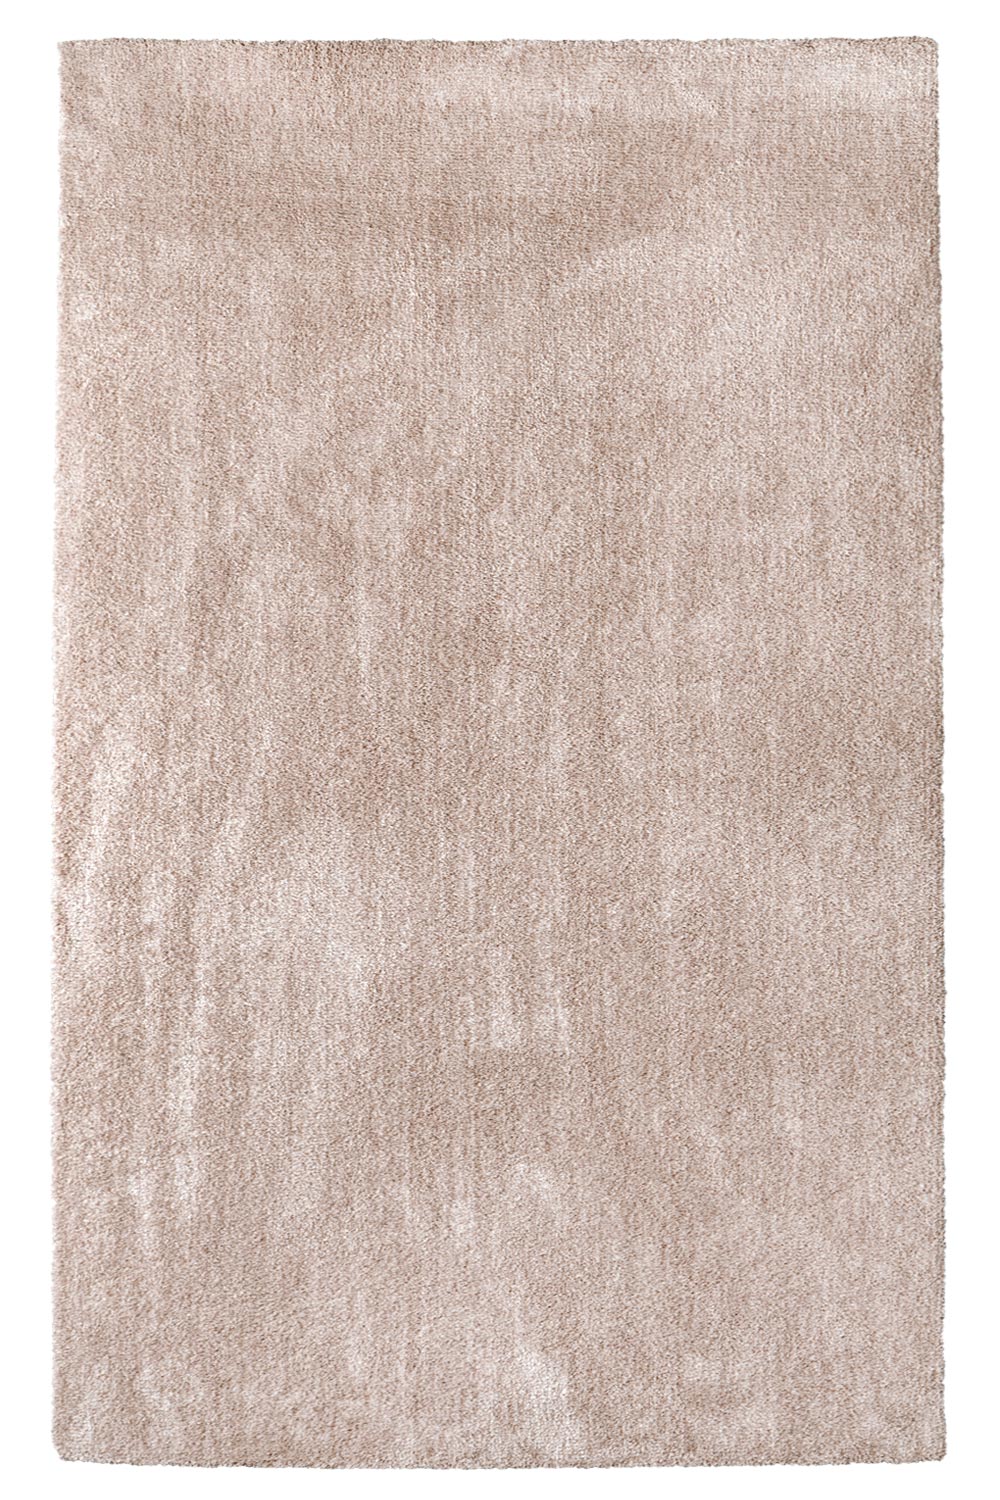 Kusový koberec Labrador 71351 026 Nude Mix 120x170 cm